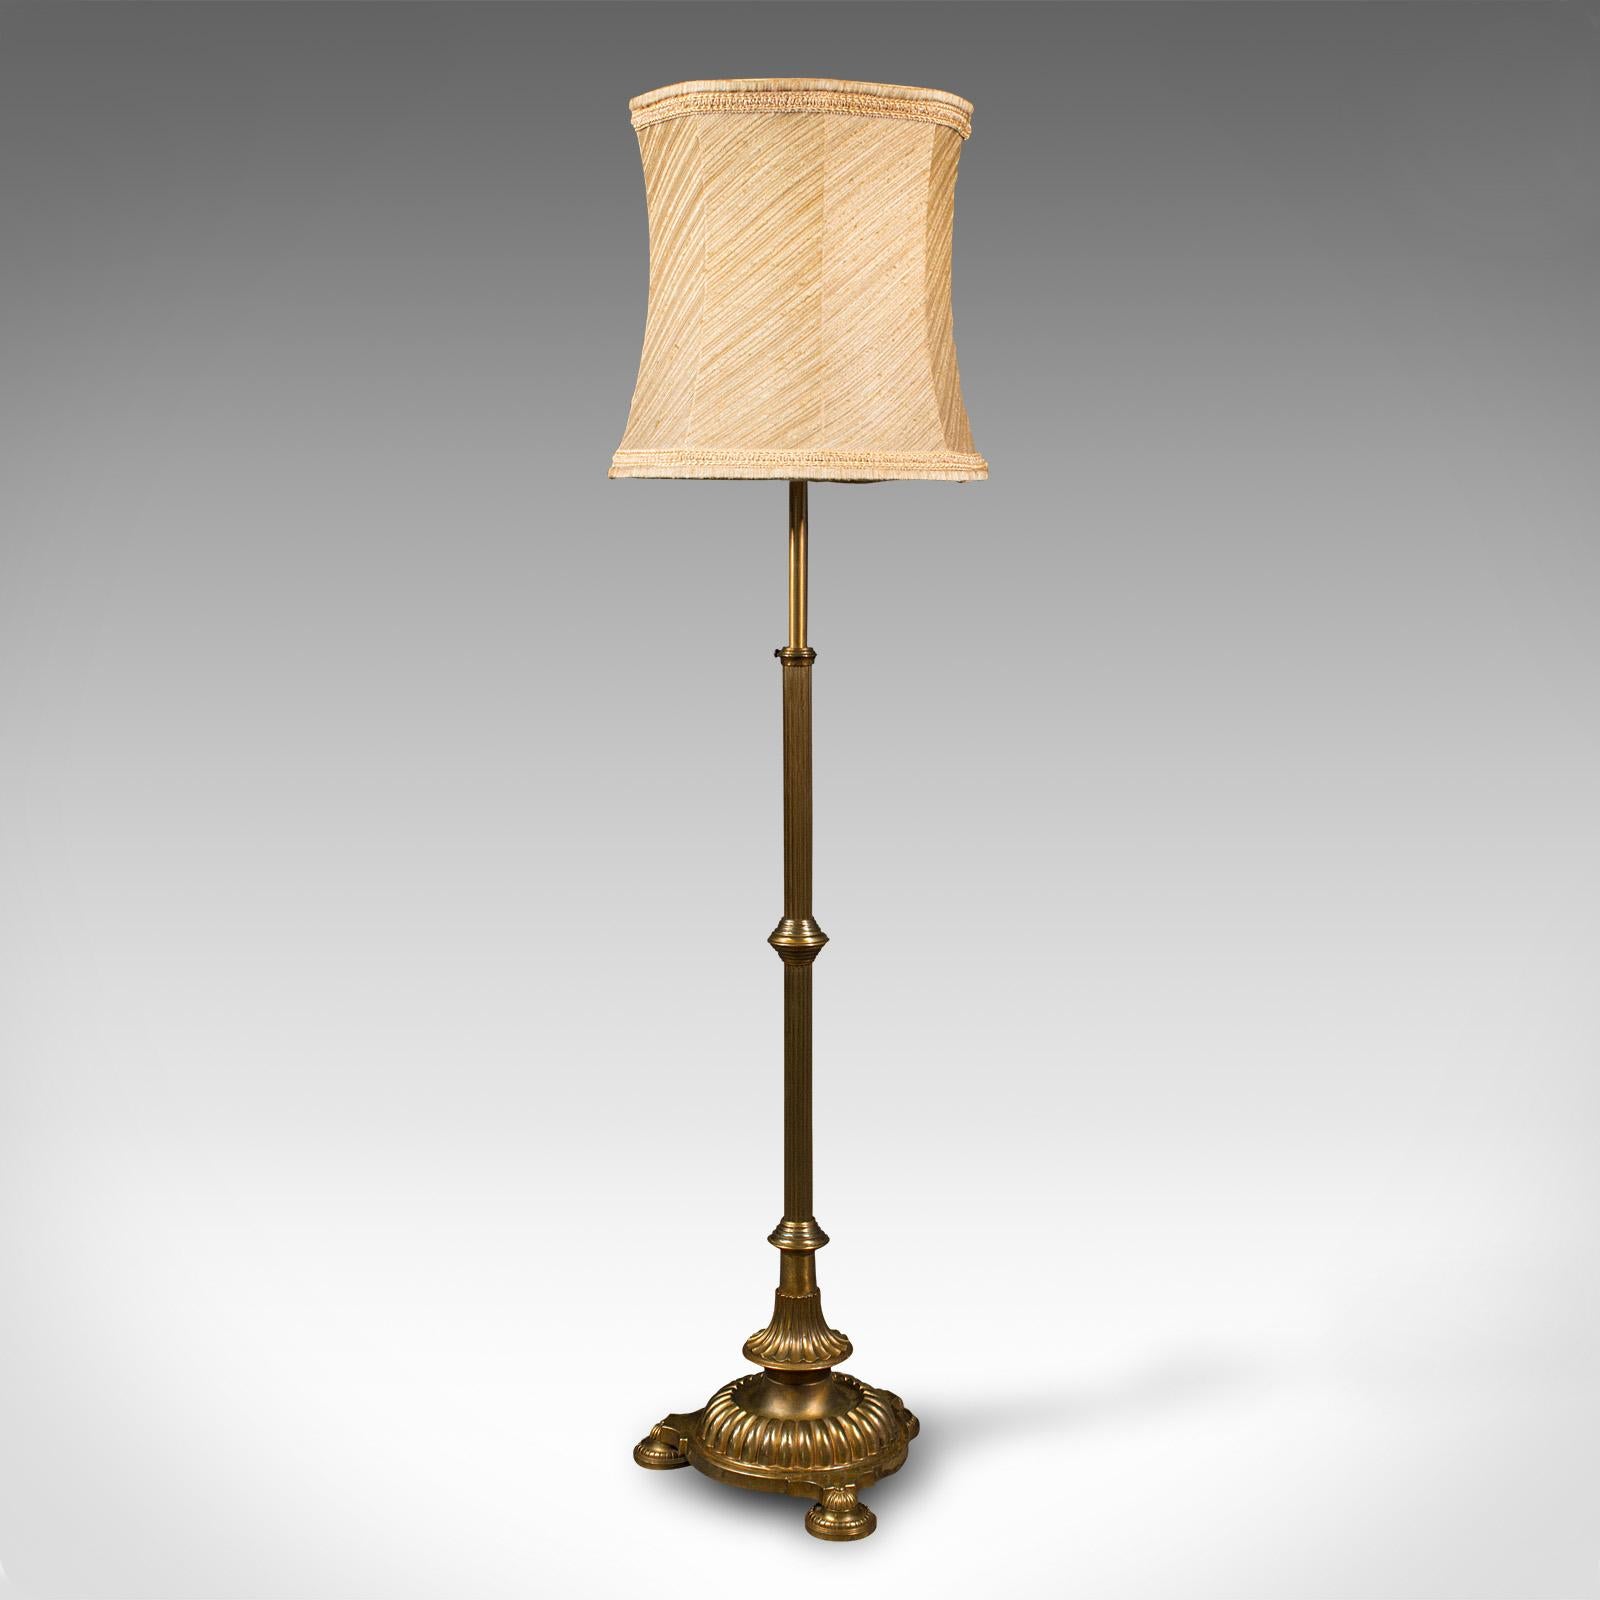 Il s'agit d'une grande lampe vintage standard. Une liseuse anglaise, en laiton lourd et réglable, datant du milieu du 20e siècle, vers 1940.

Qualité supérieure, taille superbe et finition séduisante
Présente une patine vieillie souhaitable sur